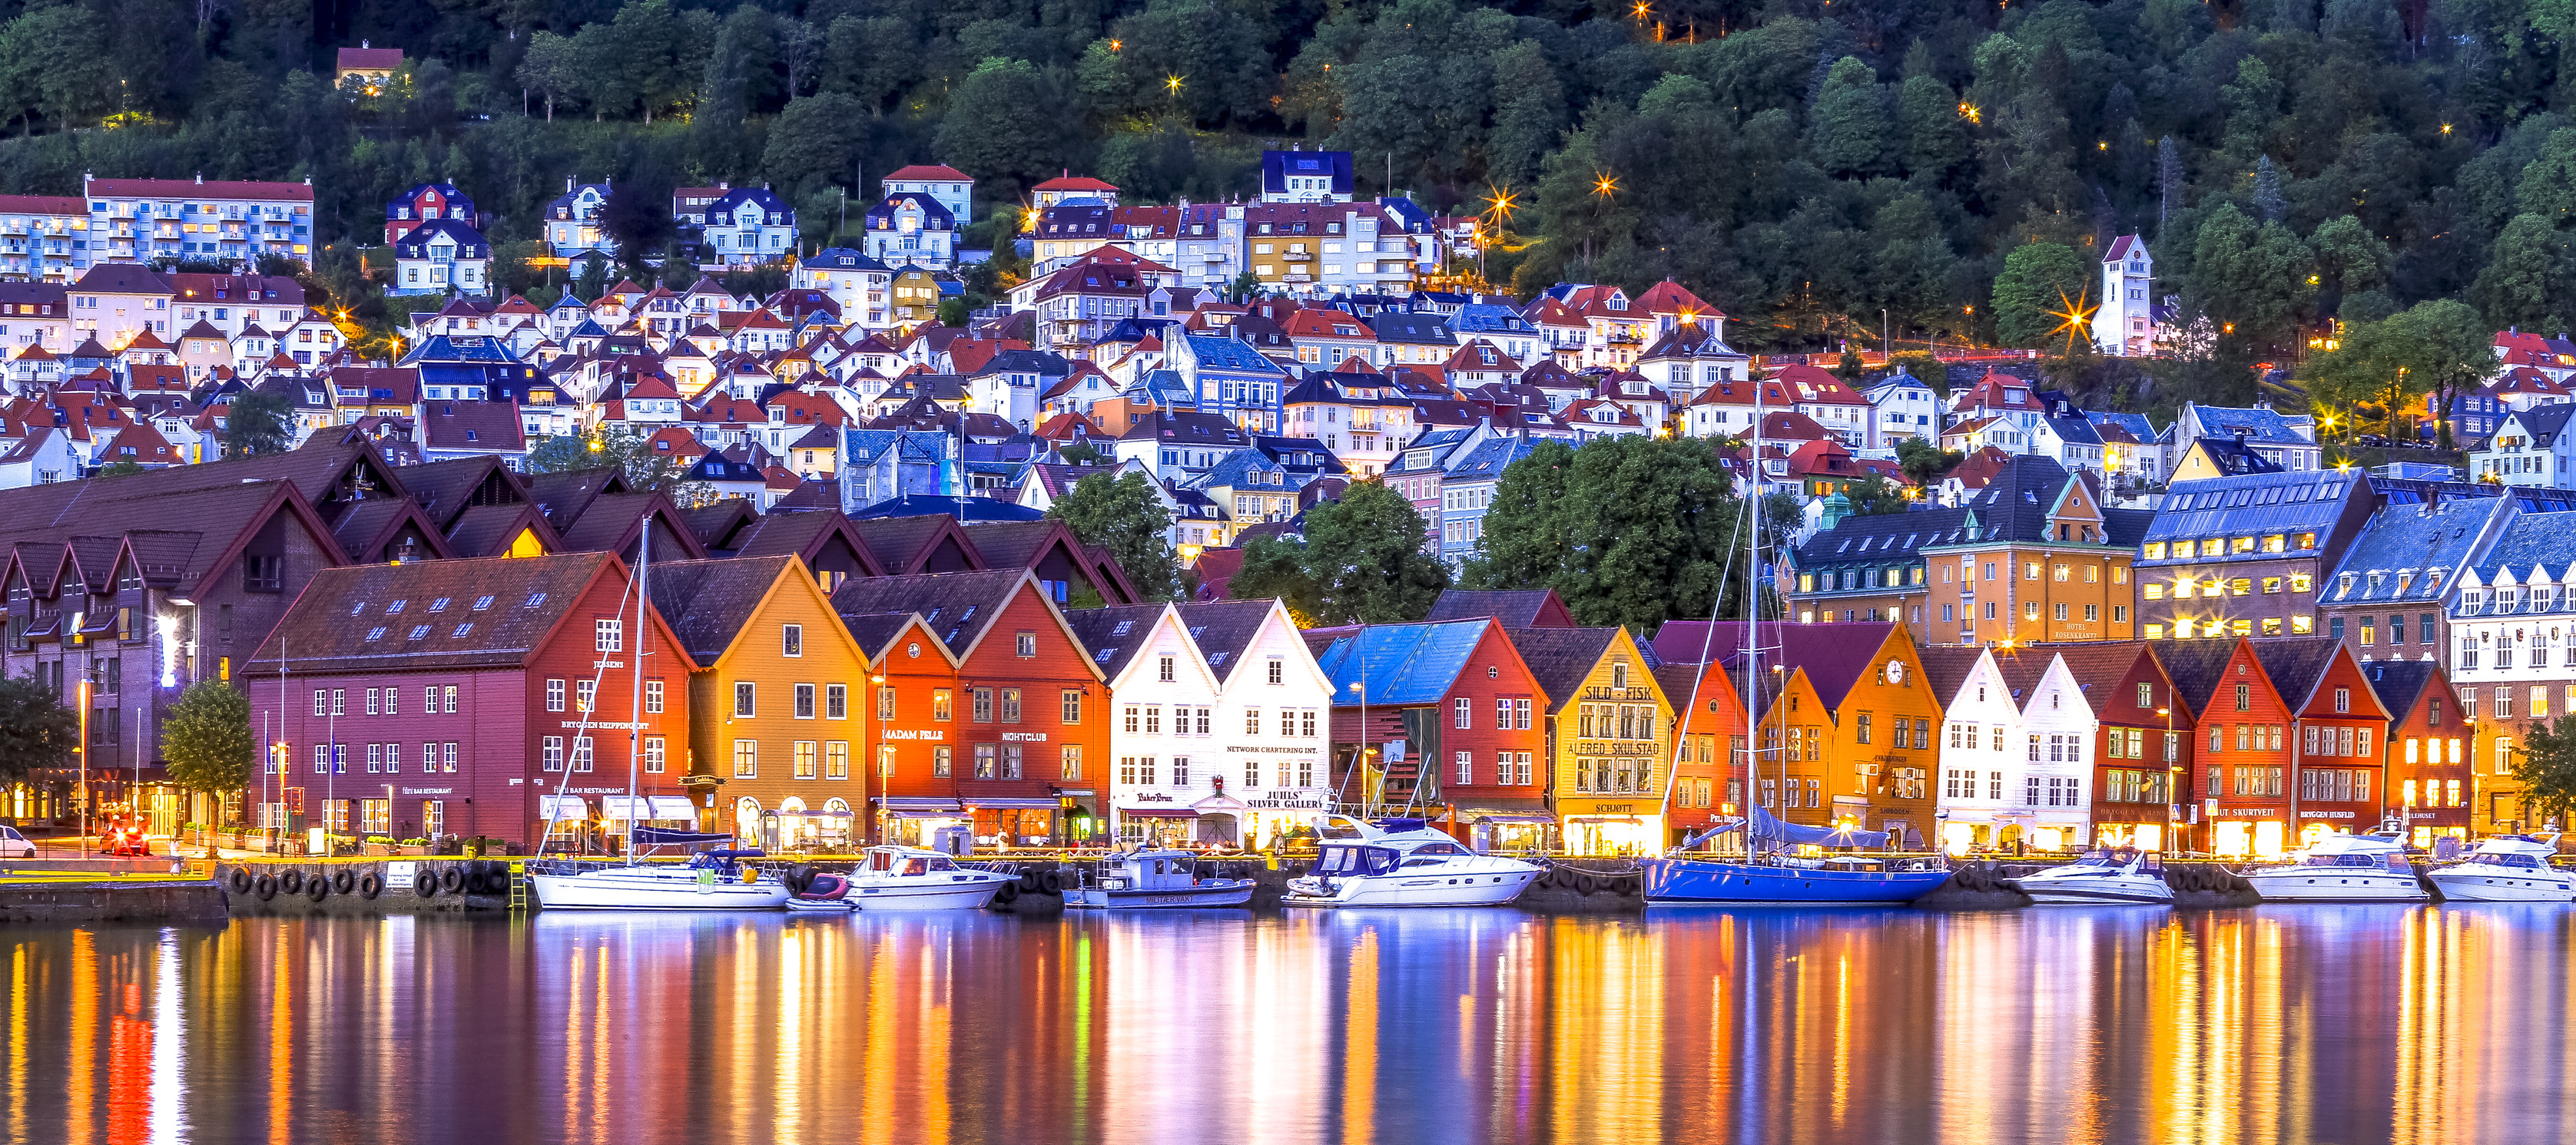 Bryggen in Bergen, Cultural heritage, Norway history, UNESCO site, 3360x1500 Dual Screen Desktop